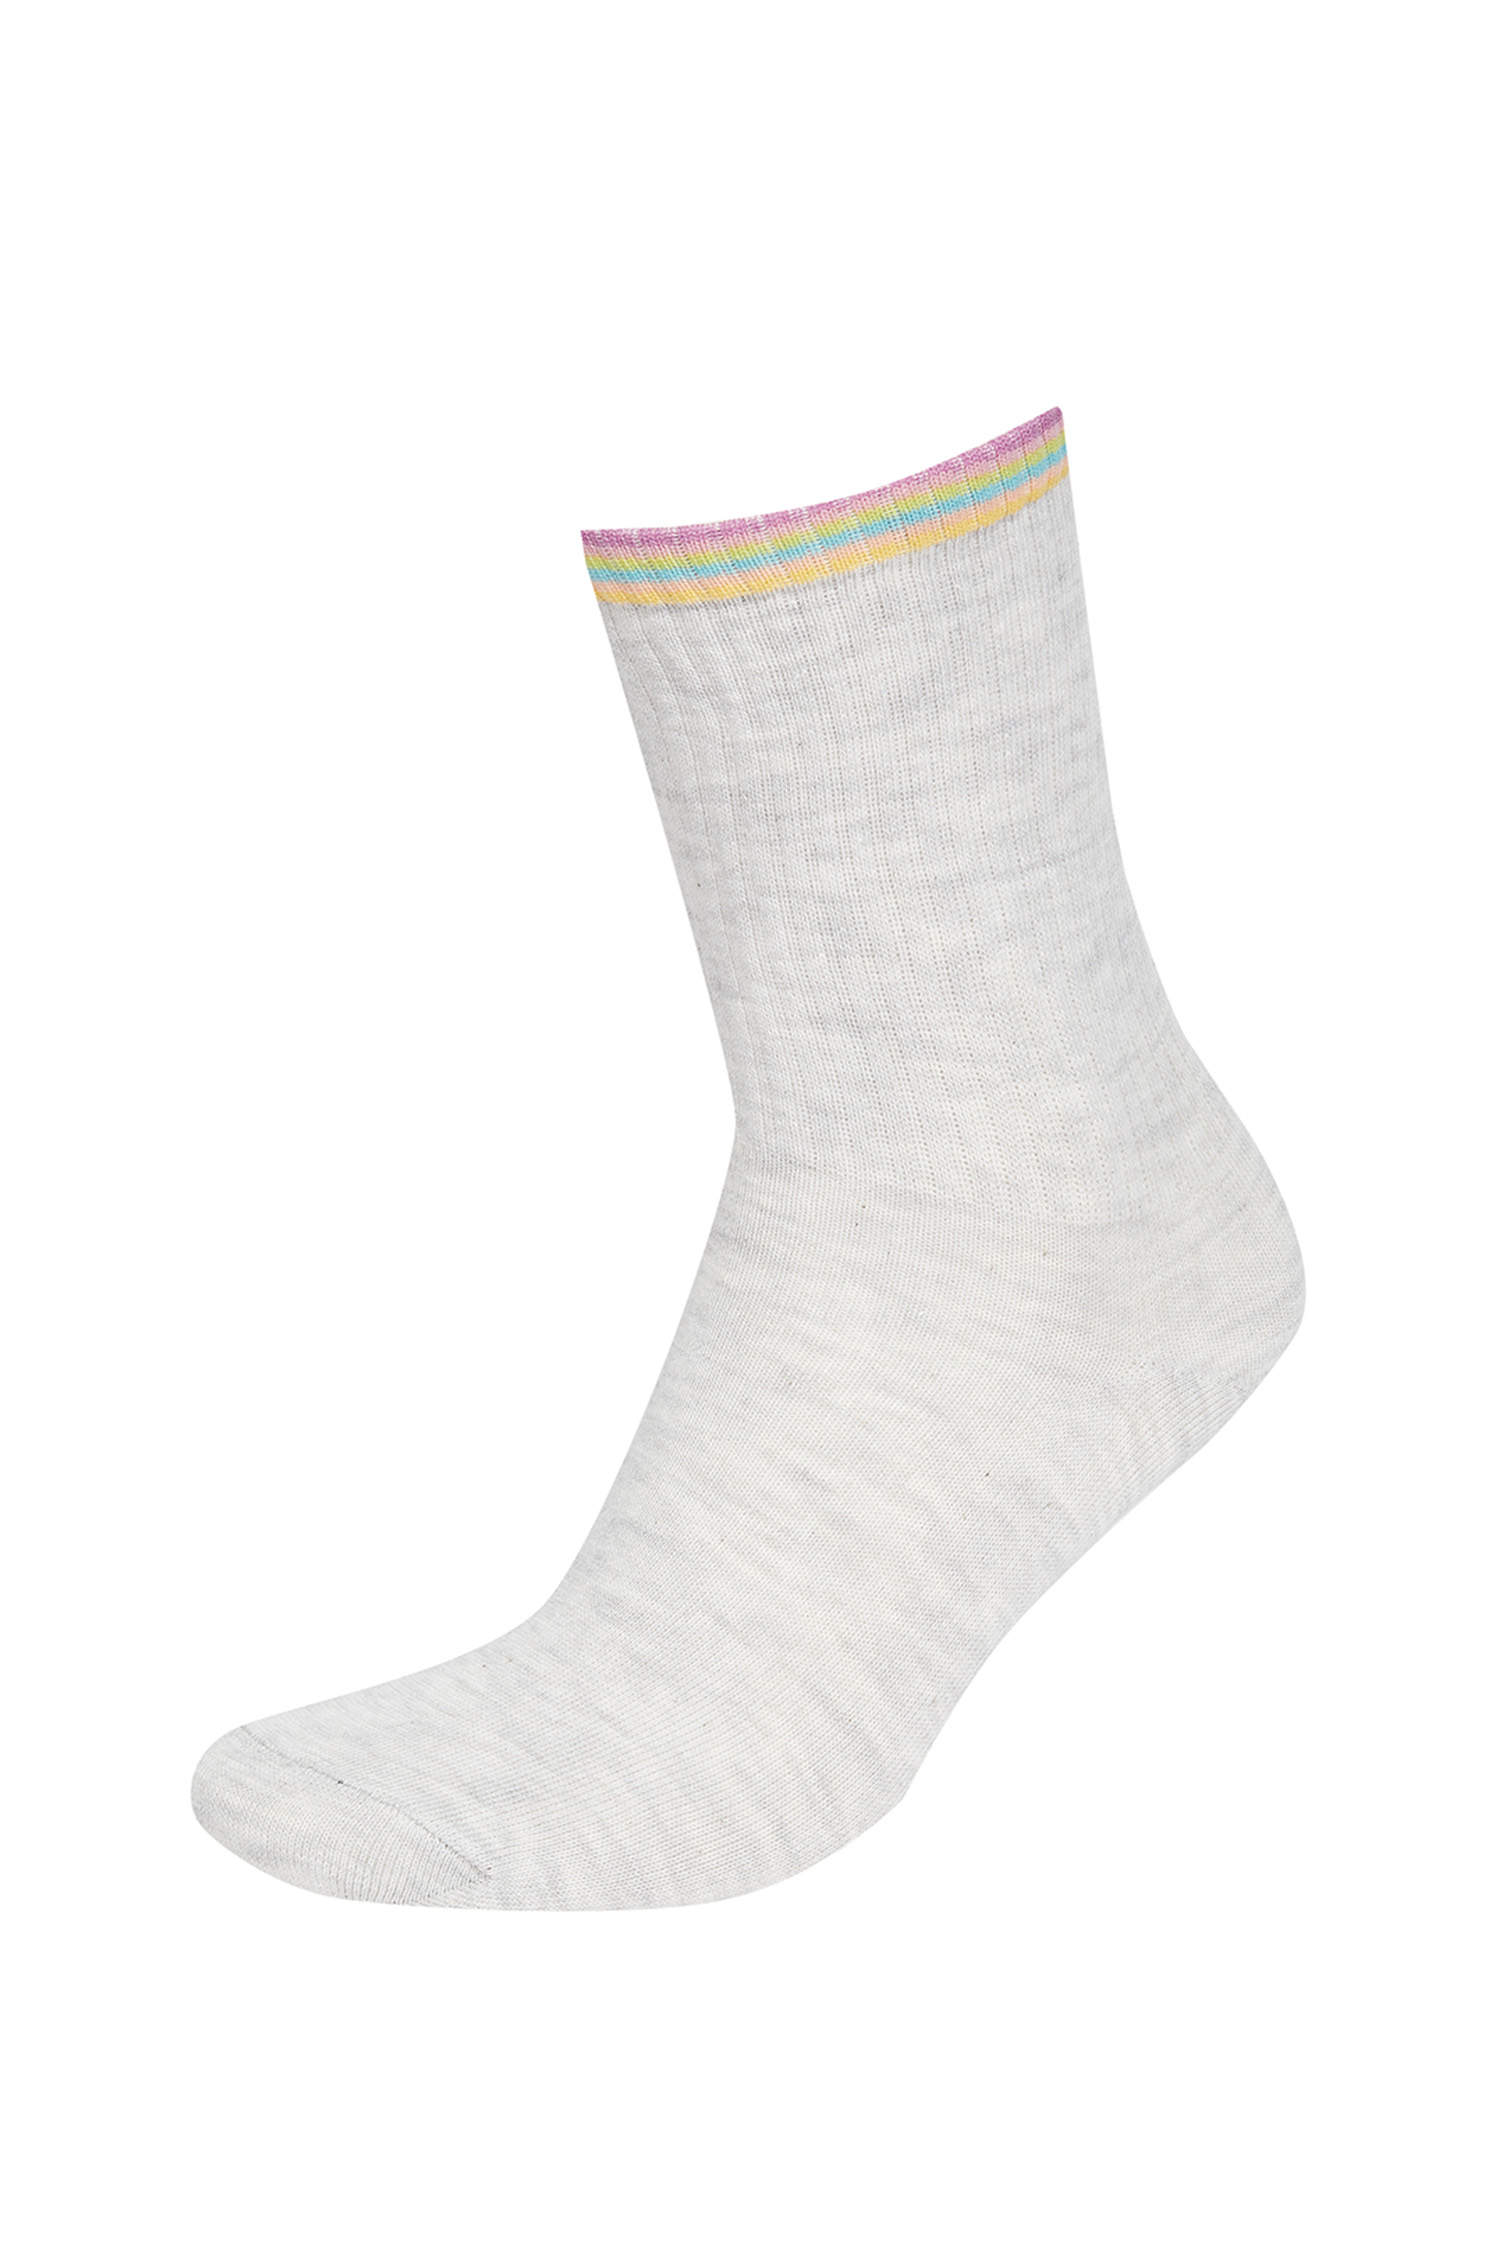 Defacto Kadın Desenli 3'lü Soket Çorap. 3